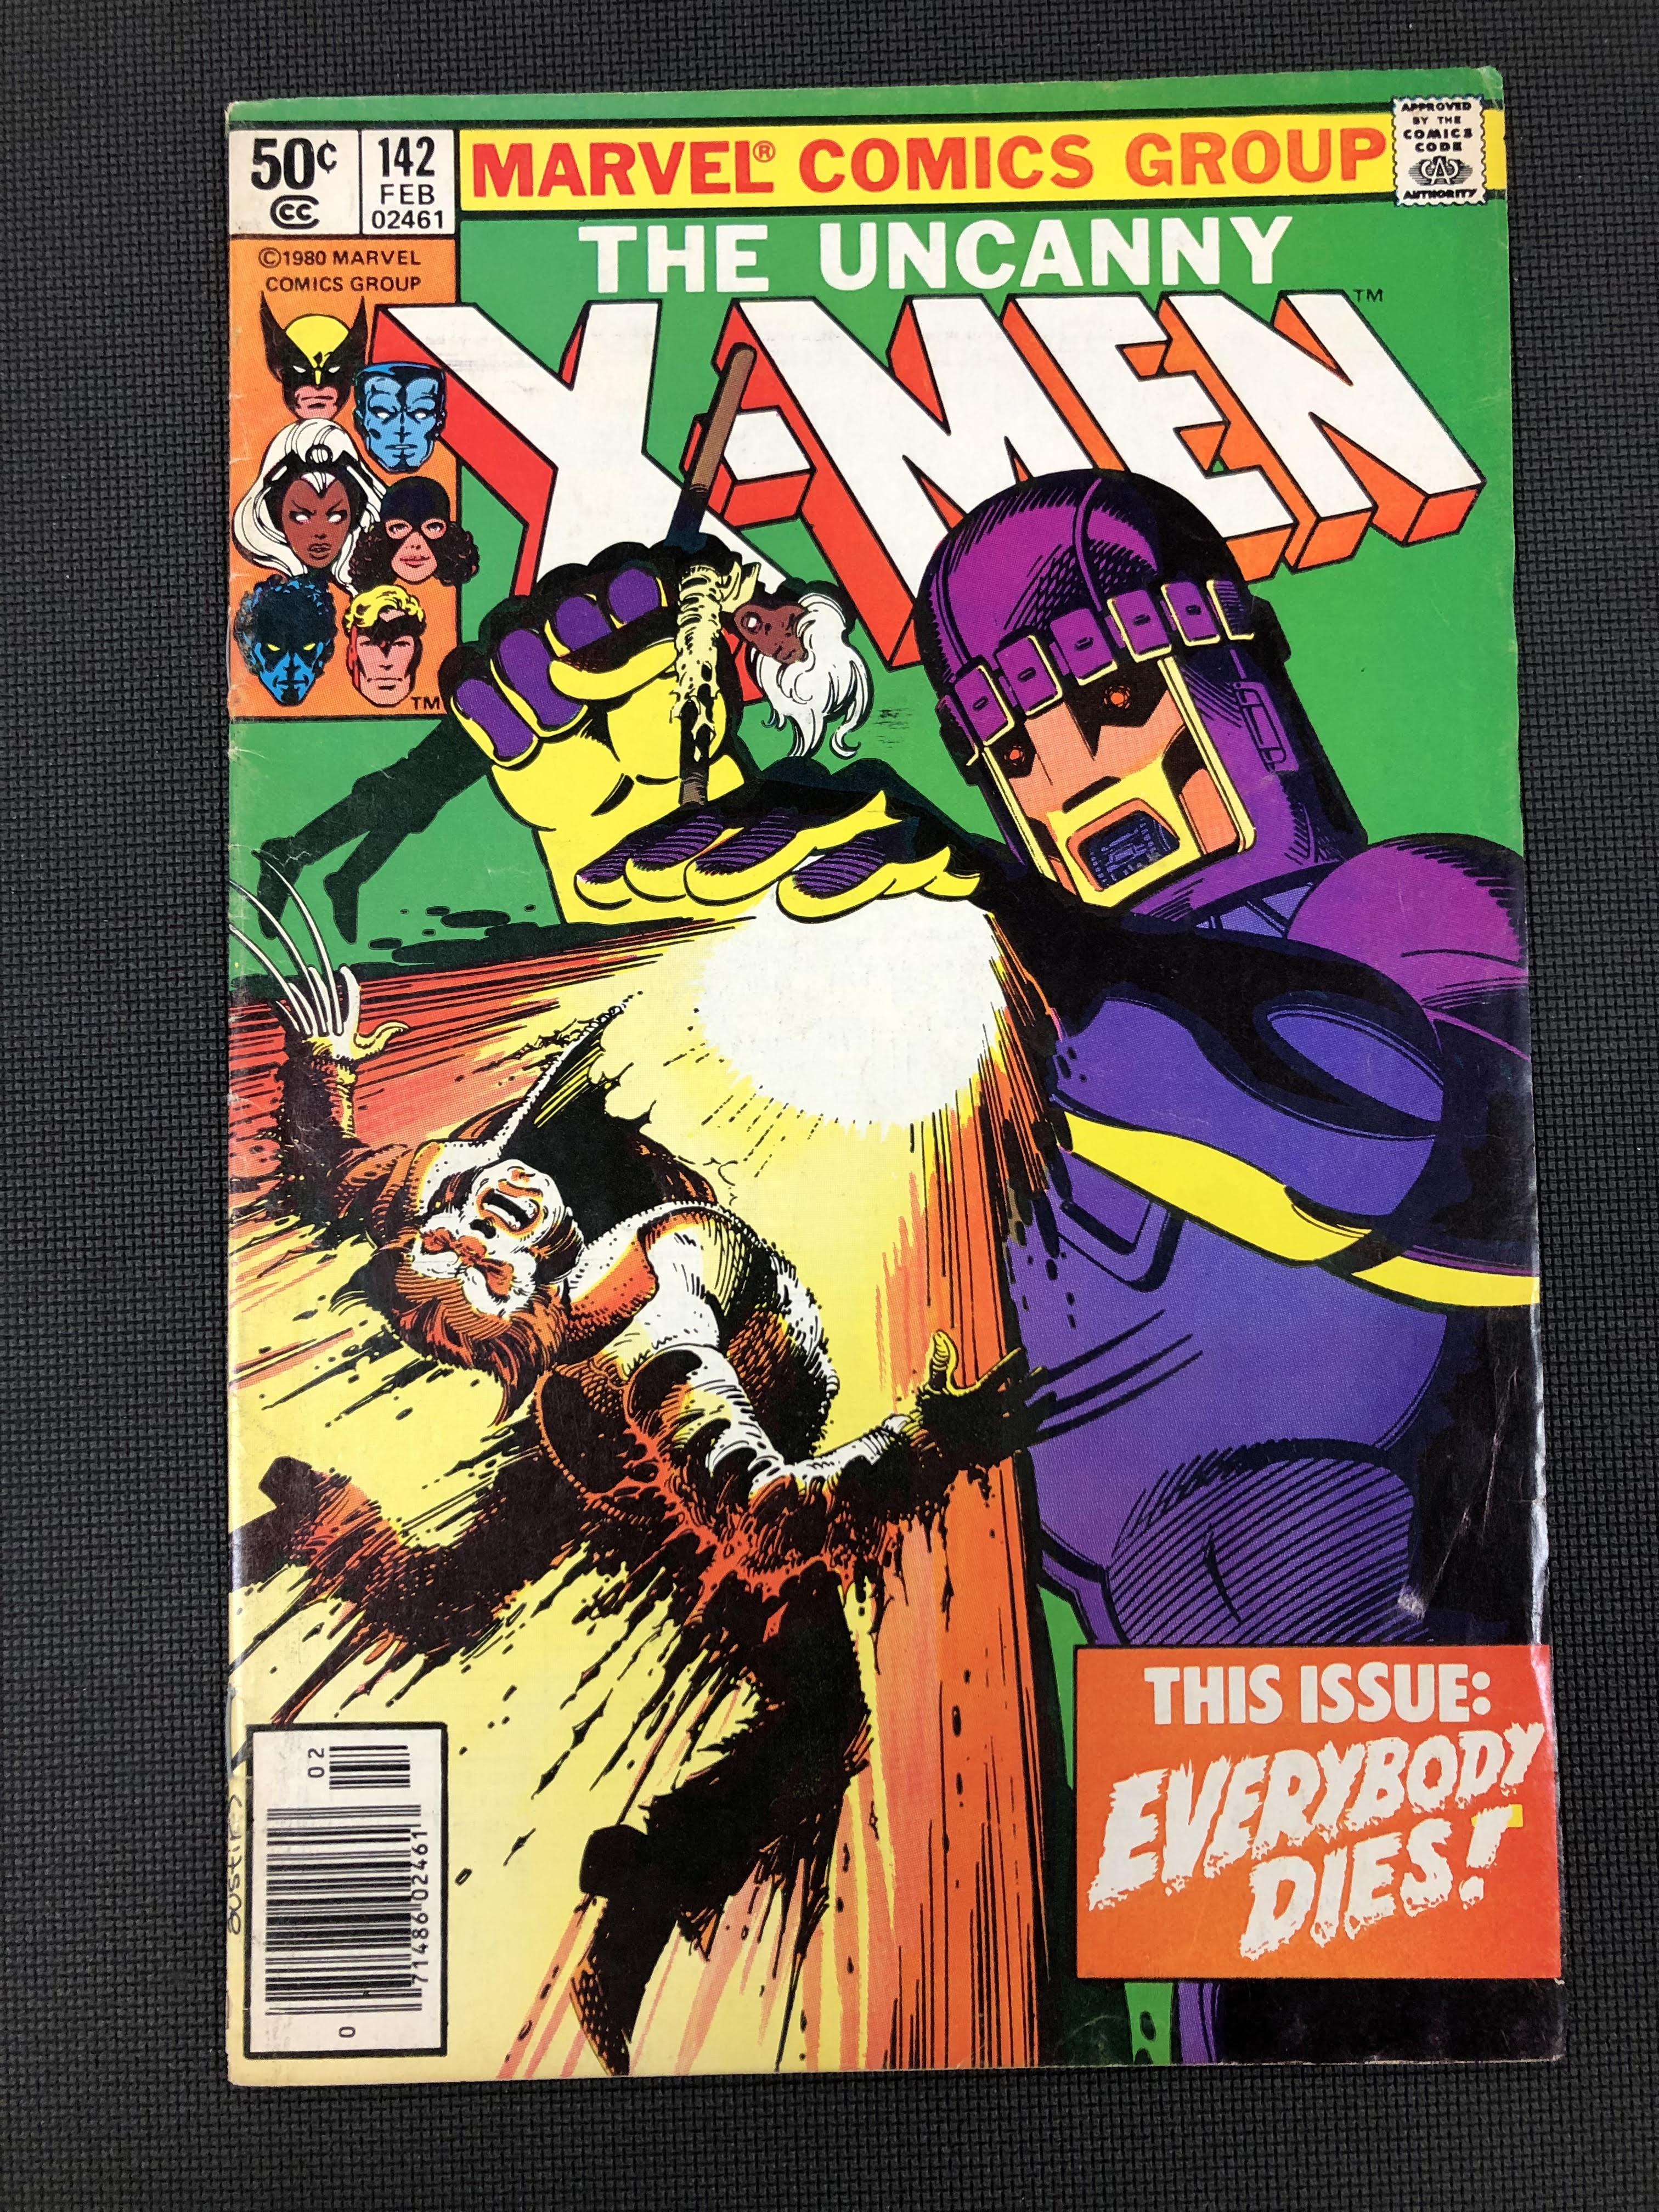 Uncanny X-Men #142 (Marvel 1963)